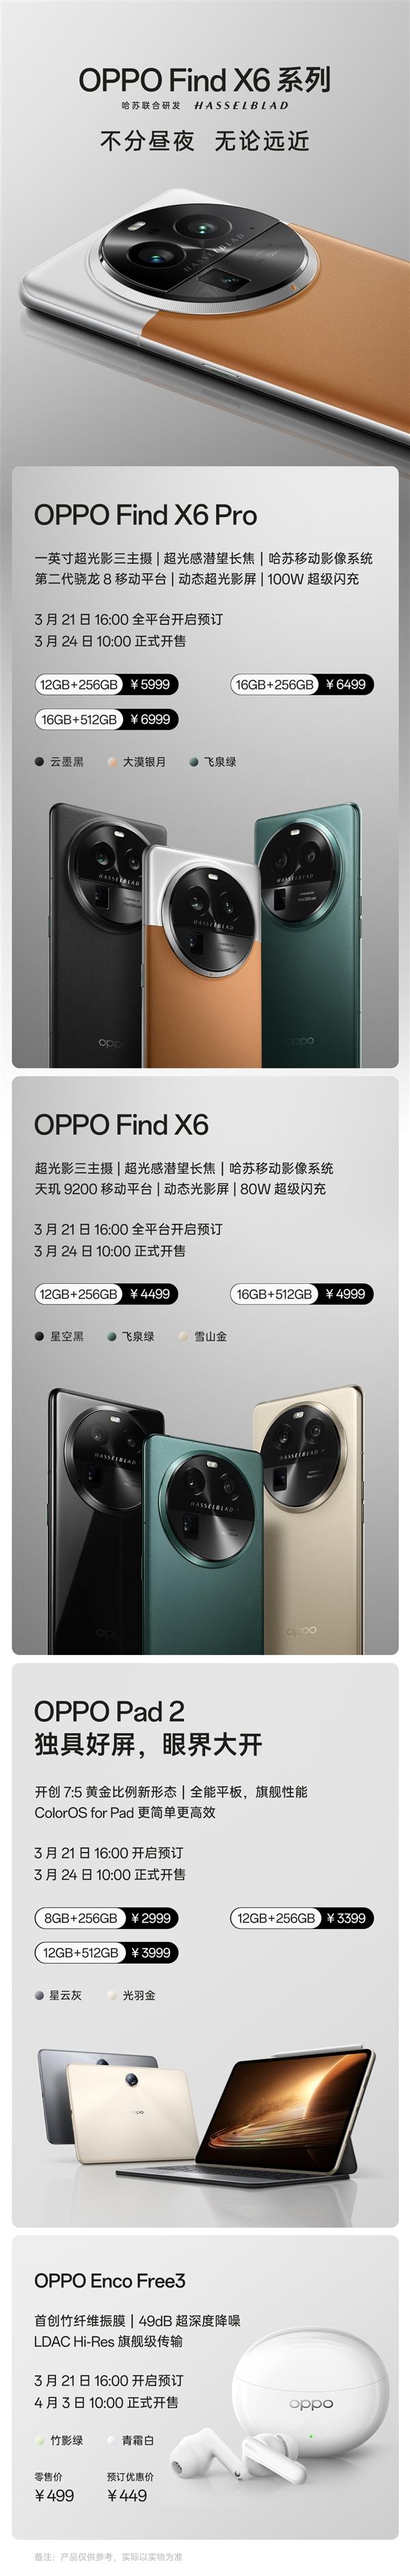 OPPO Find X6新品发布会3月22日举行_四大新品售价449元-6999元